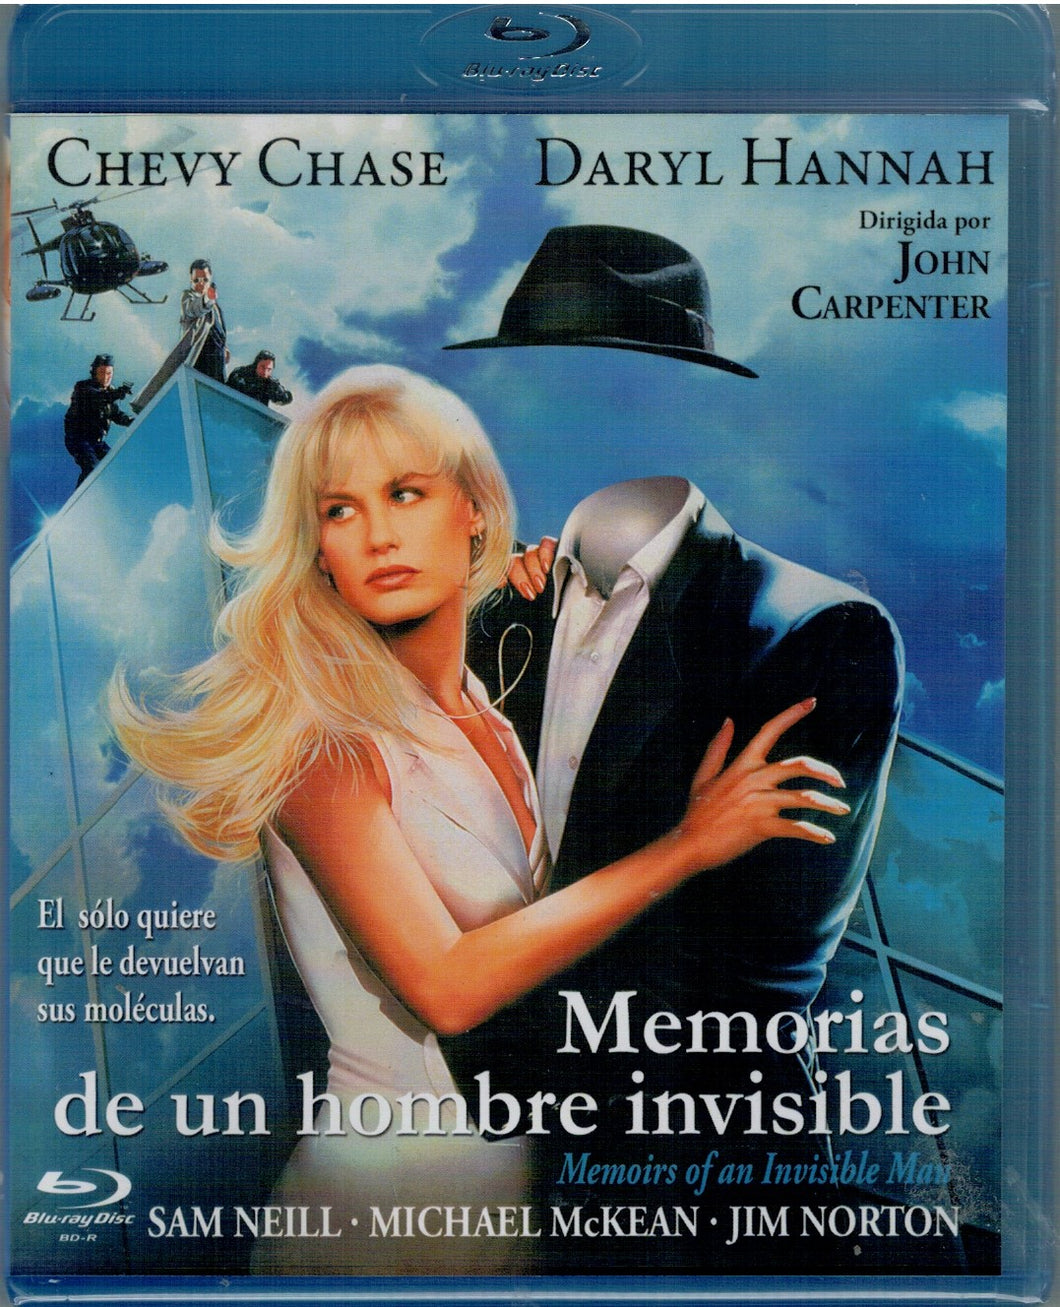 Memorias de un hombre invisible (Memoirs of an Invisible Man) (Bluray Nuevo)